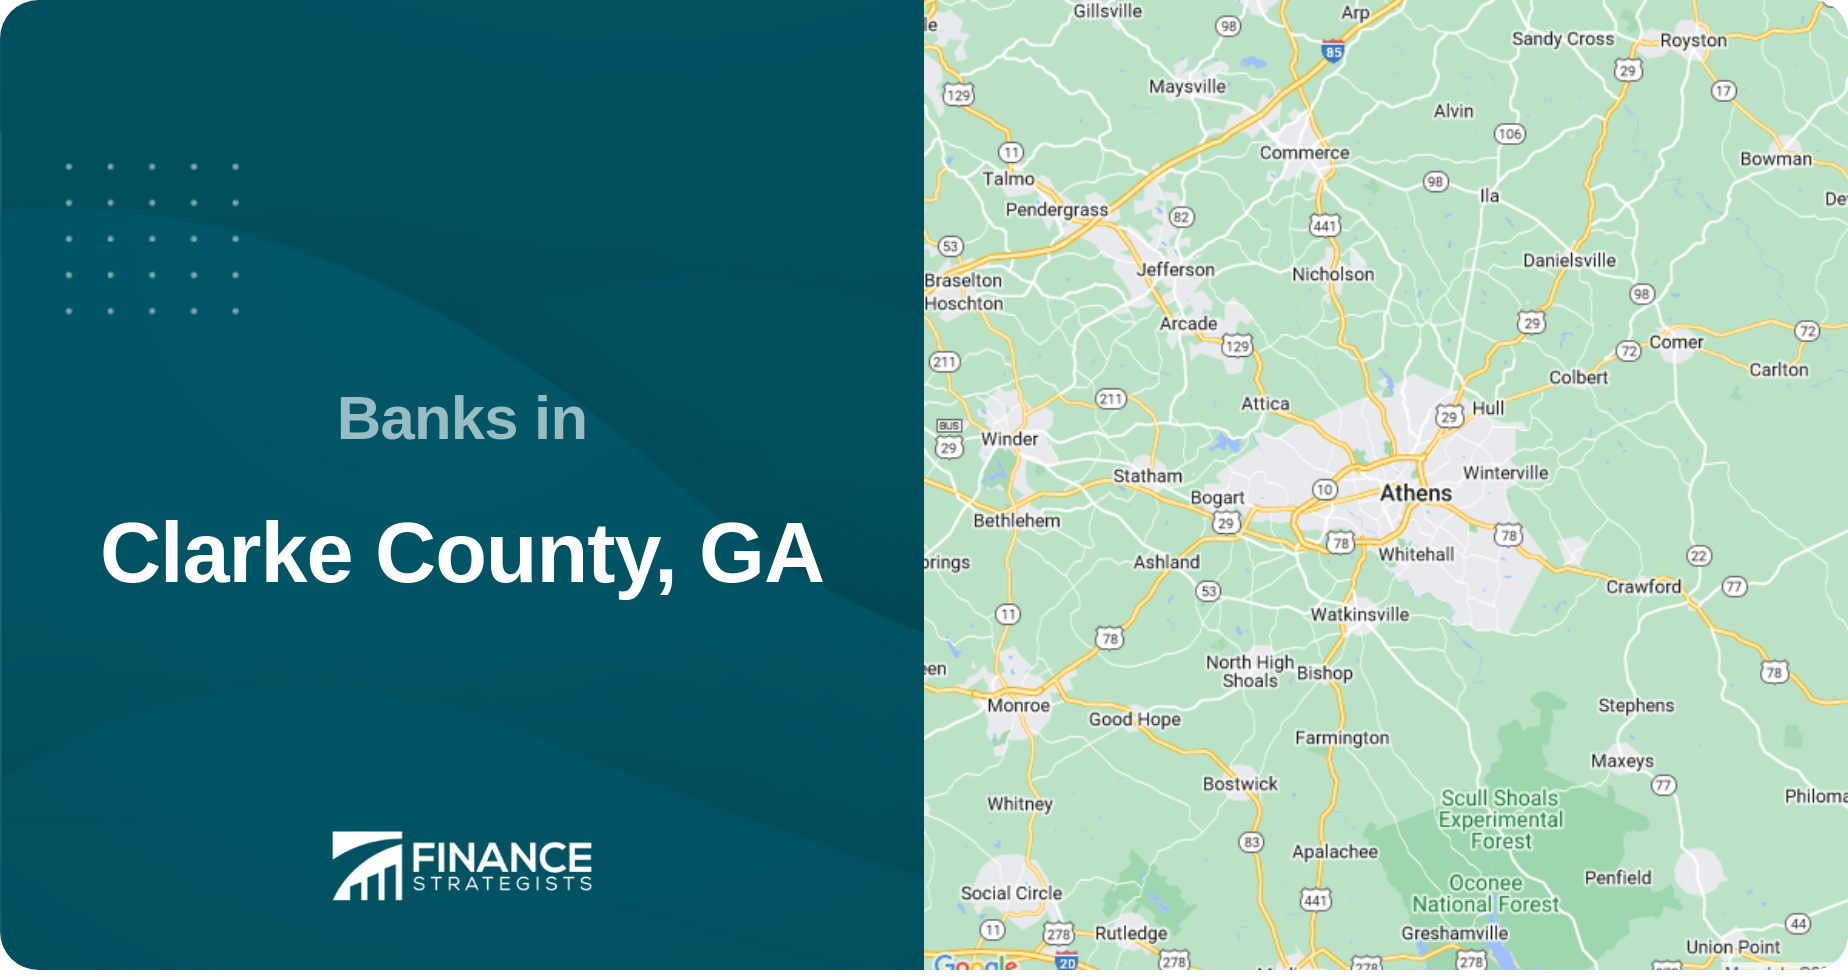 Banks in Clarke County, GA